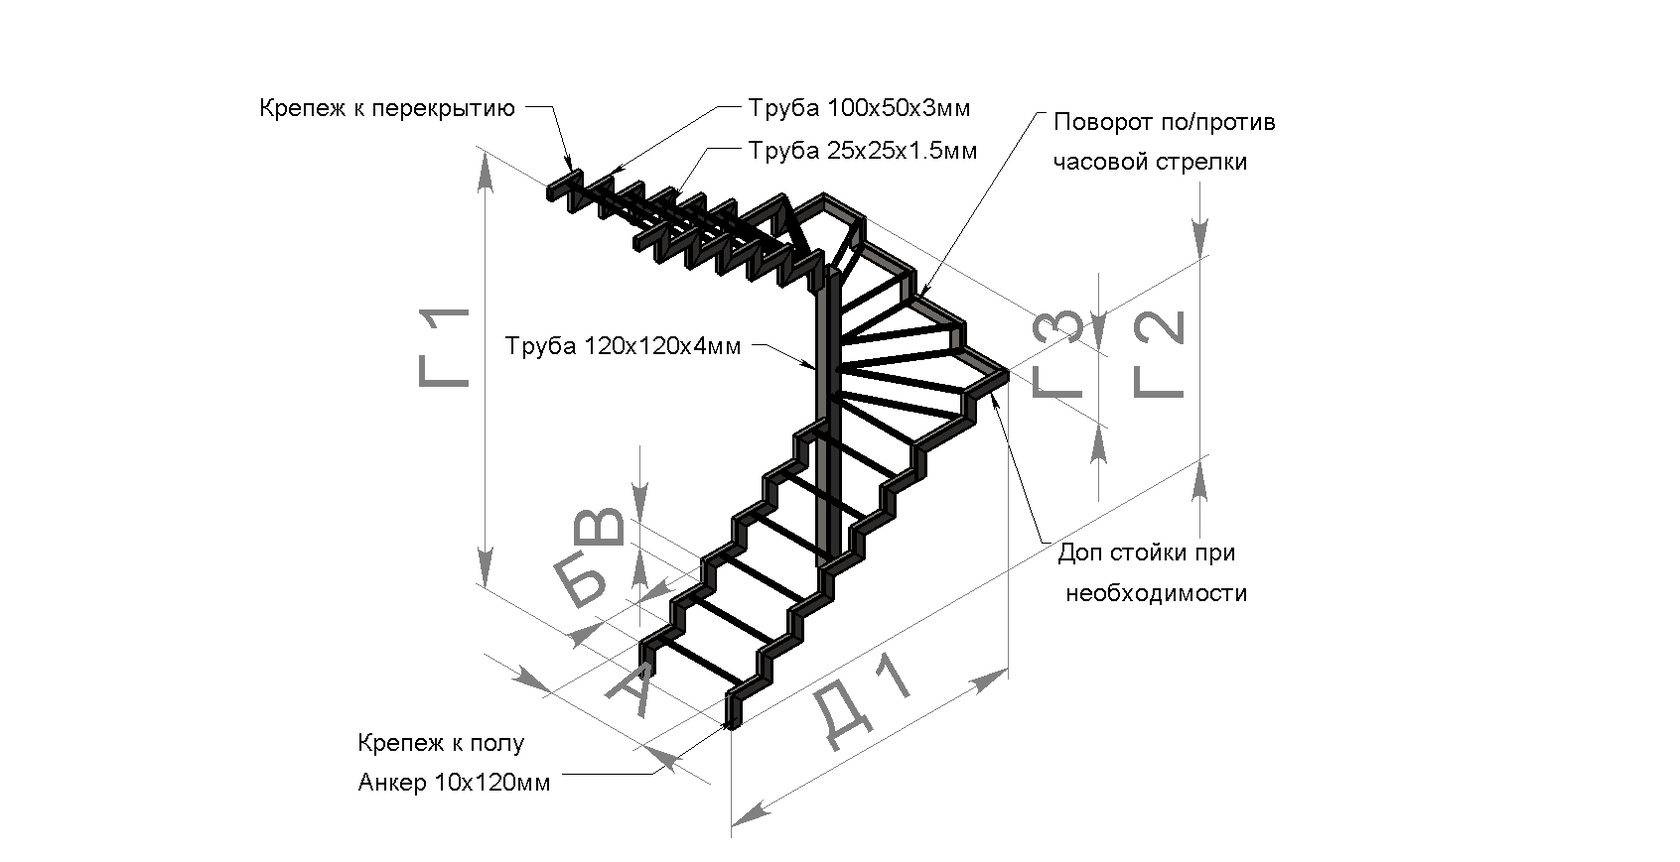 Точный калькулятор лестницы онлайн с поворотом 180 градусов: правильный расчет